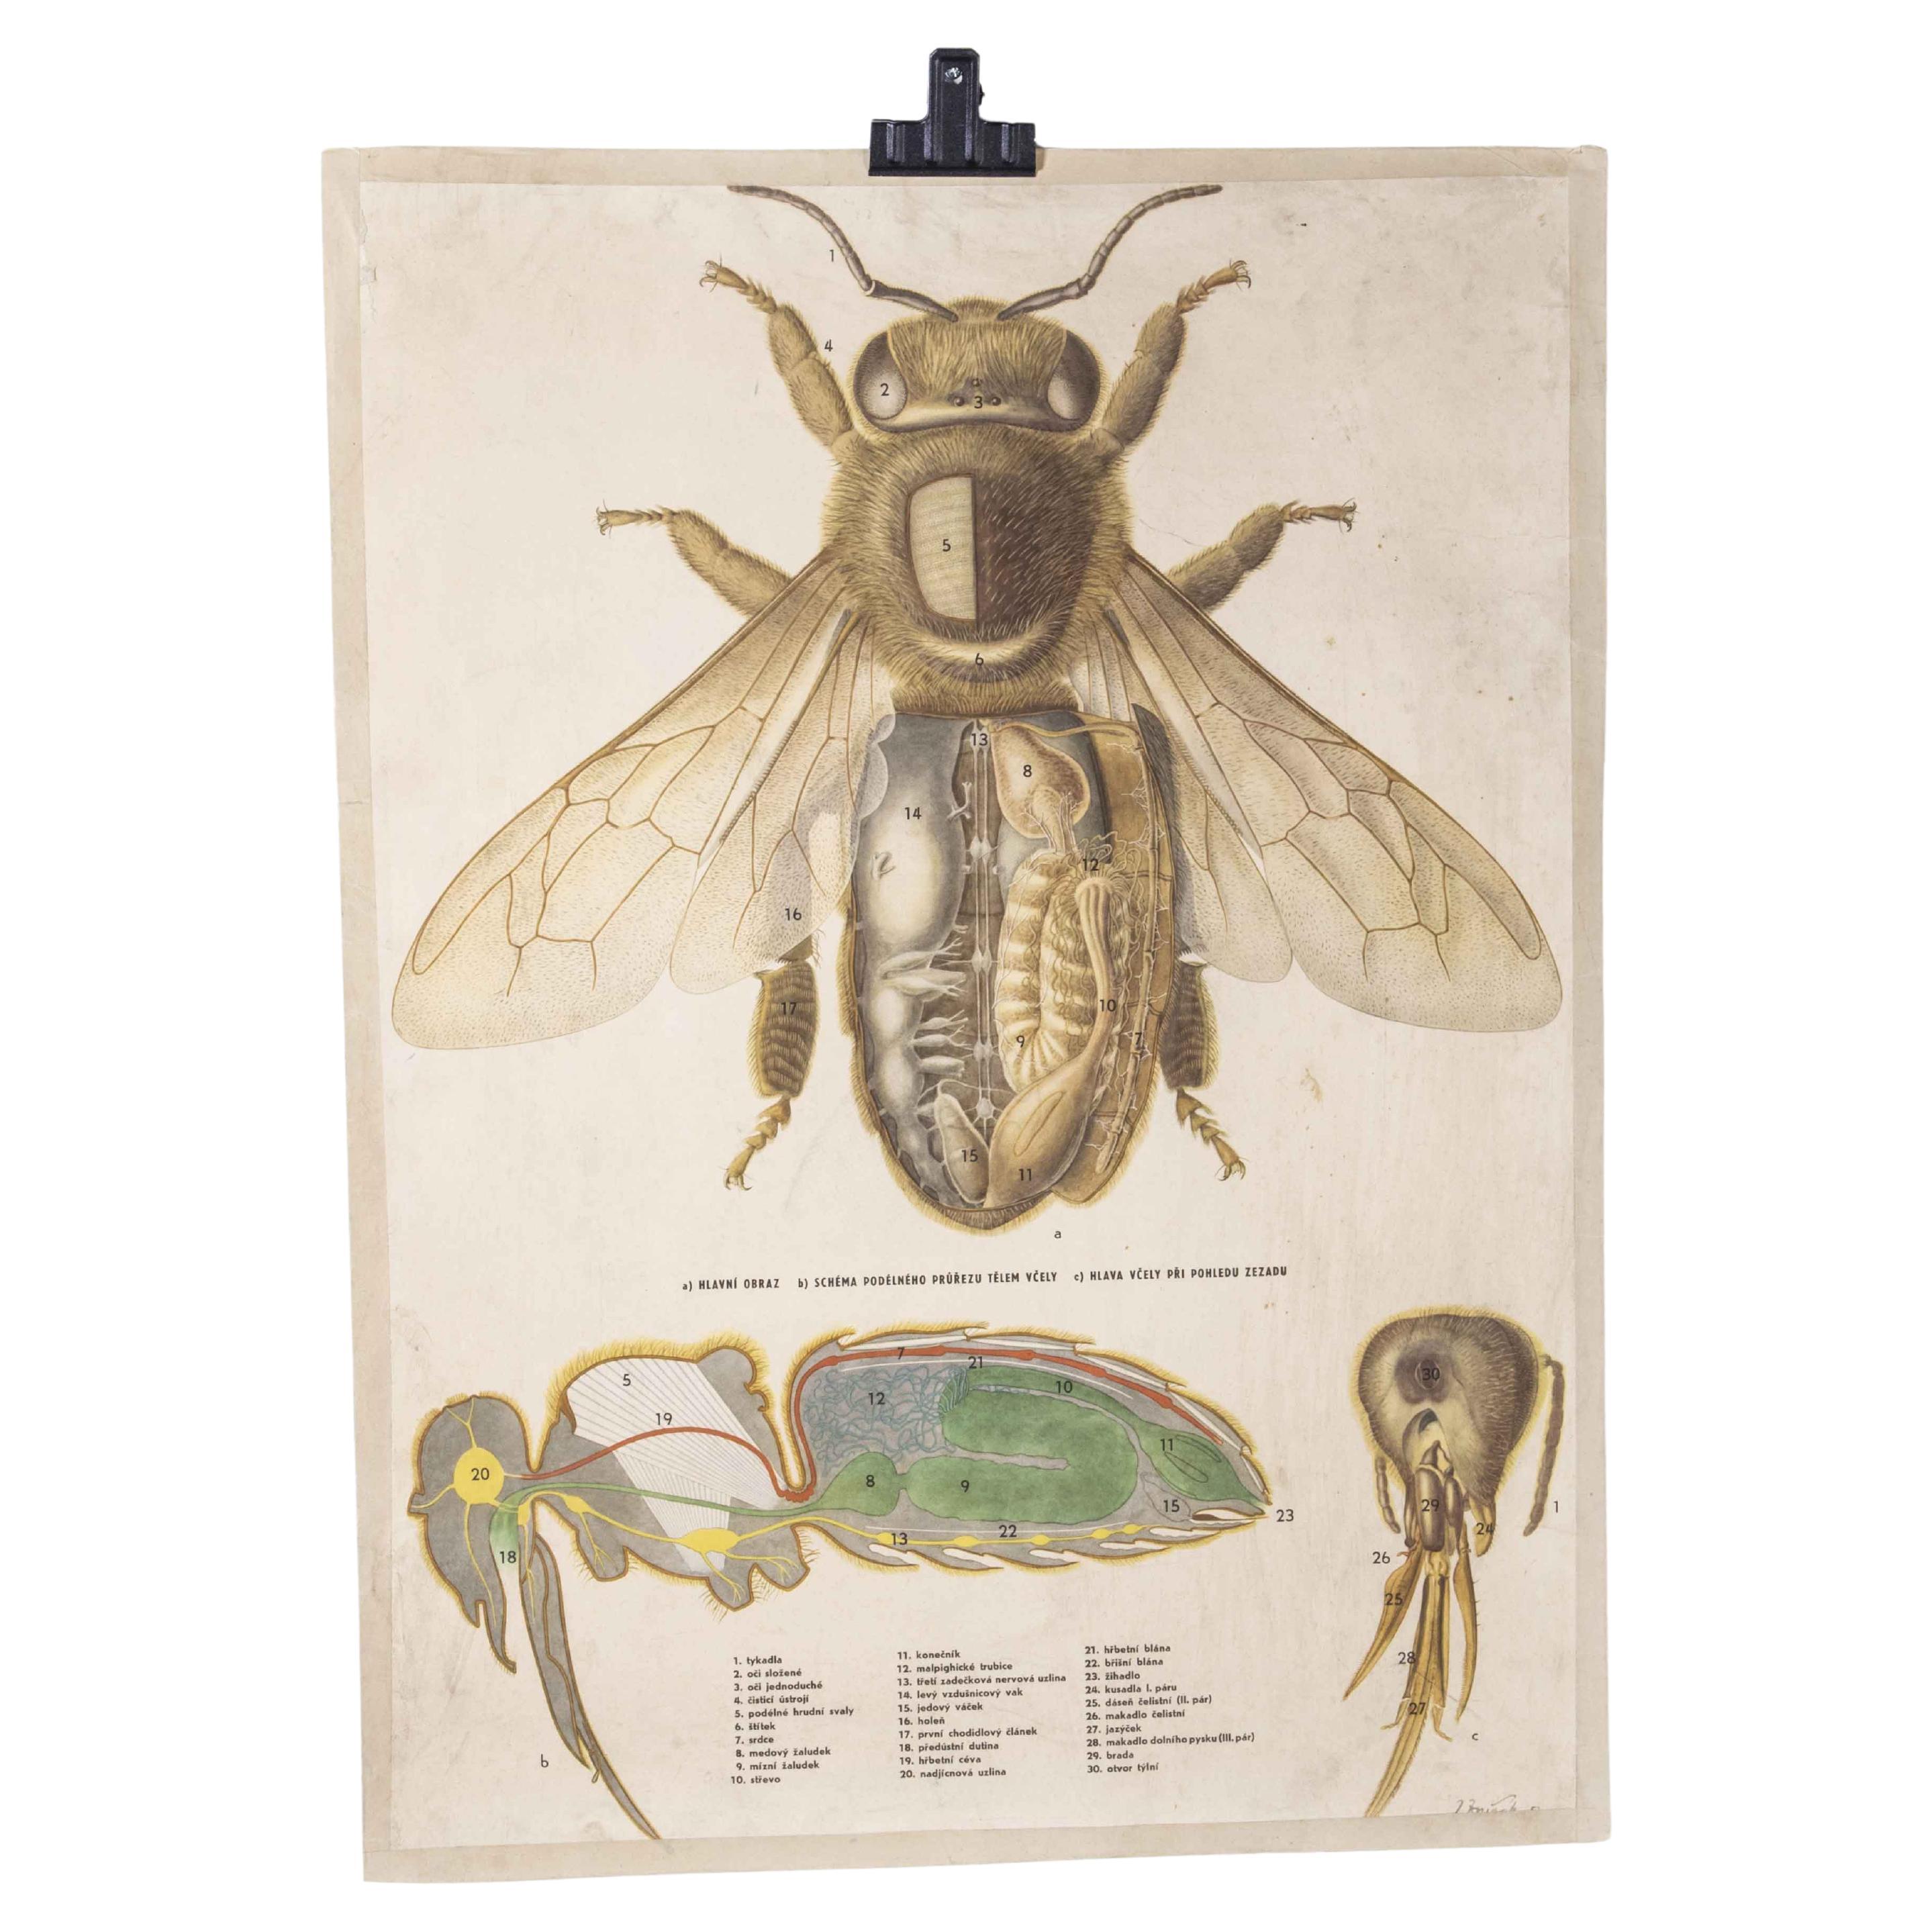 Poster éducatif des années 1950 sur l'anatomie de la mouche unique